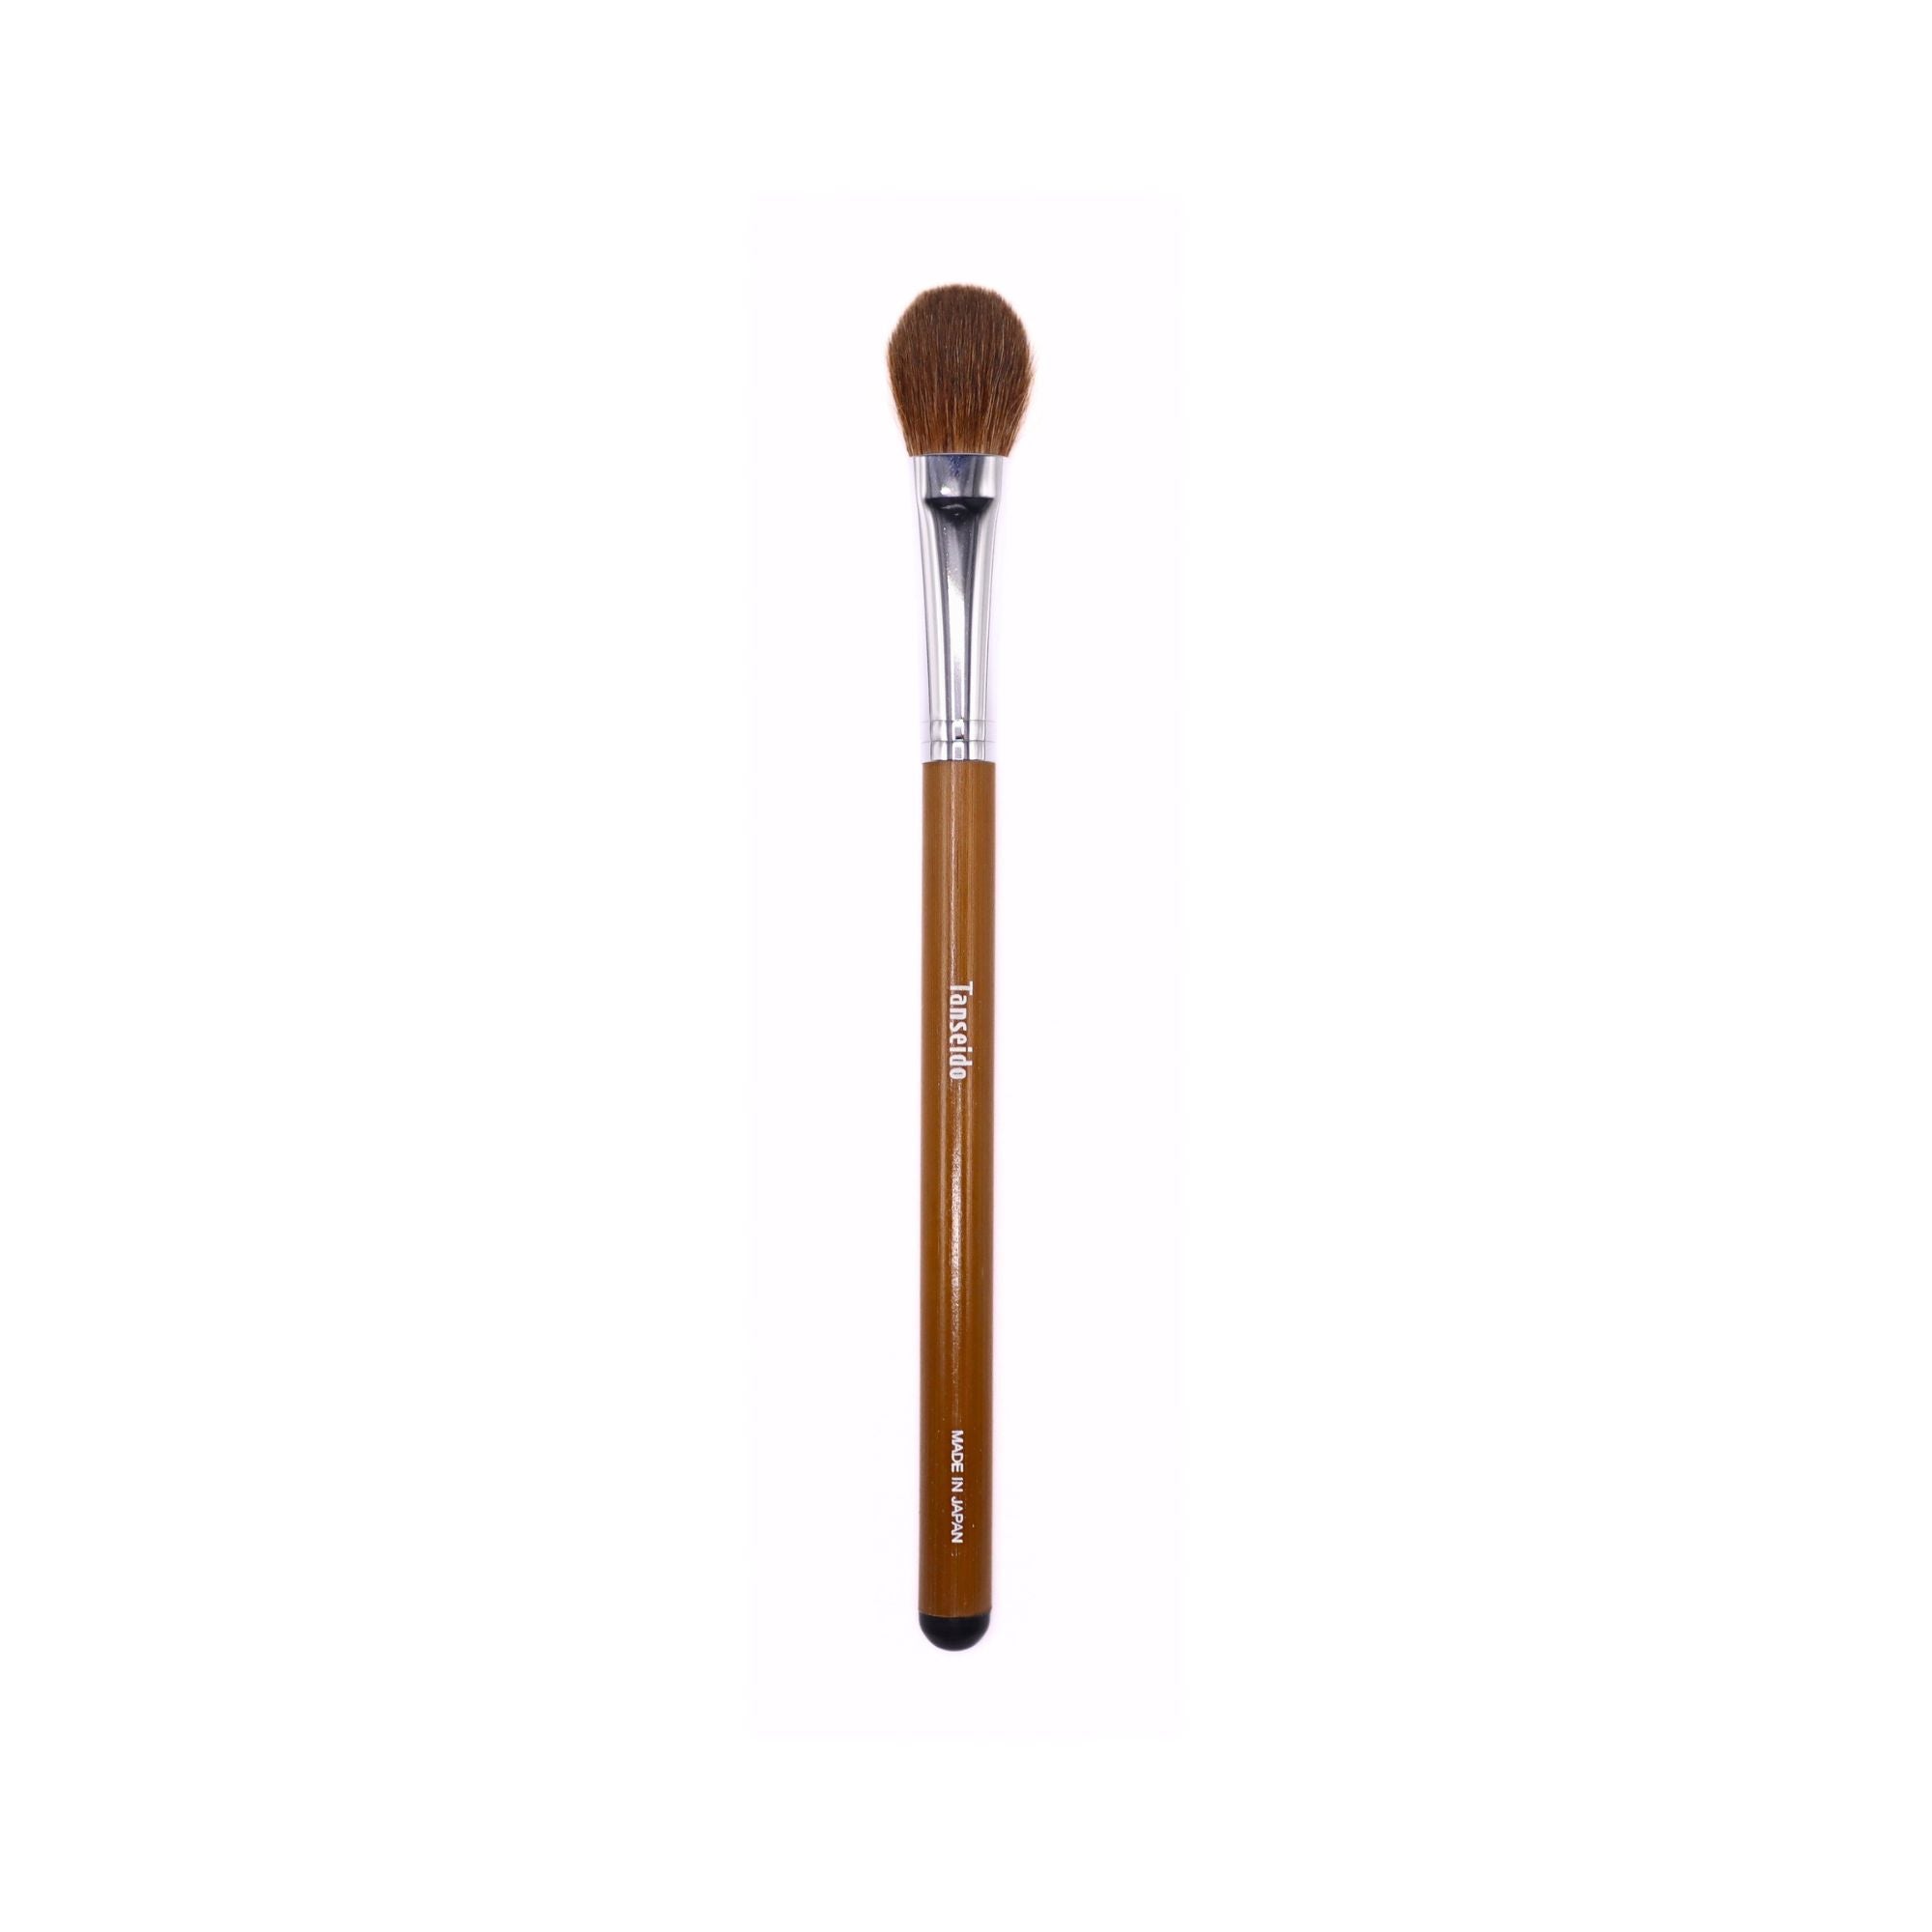 Tanseido Large Eyeshadow Brush, Take 竹 'Bamboo' Series (AQ14TAKE) - Fude Beauty, Japanese Makeup Brushes